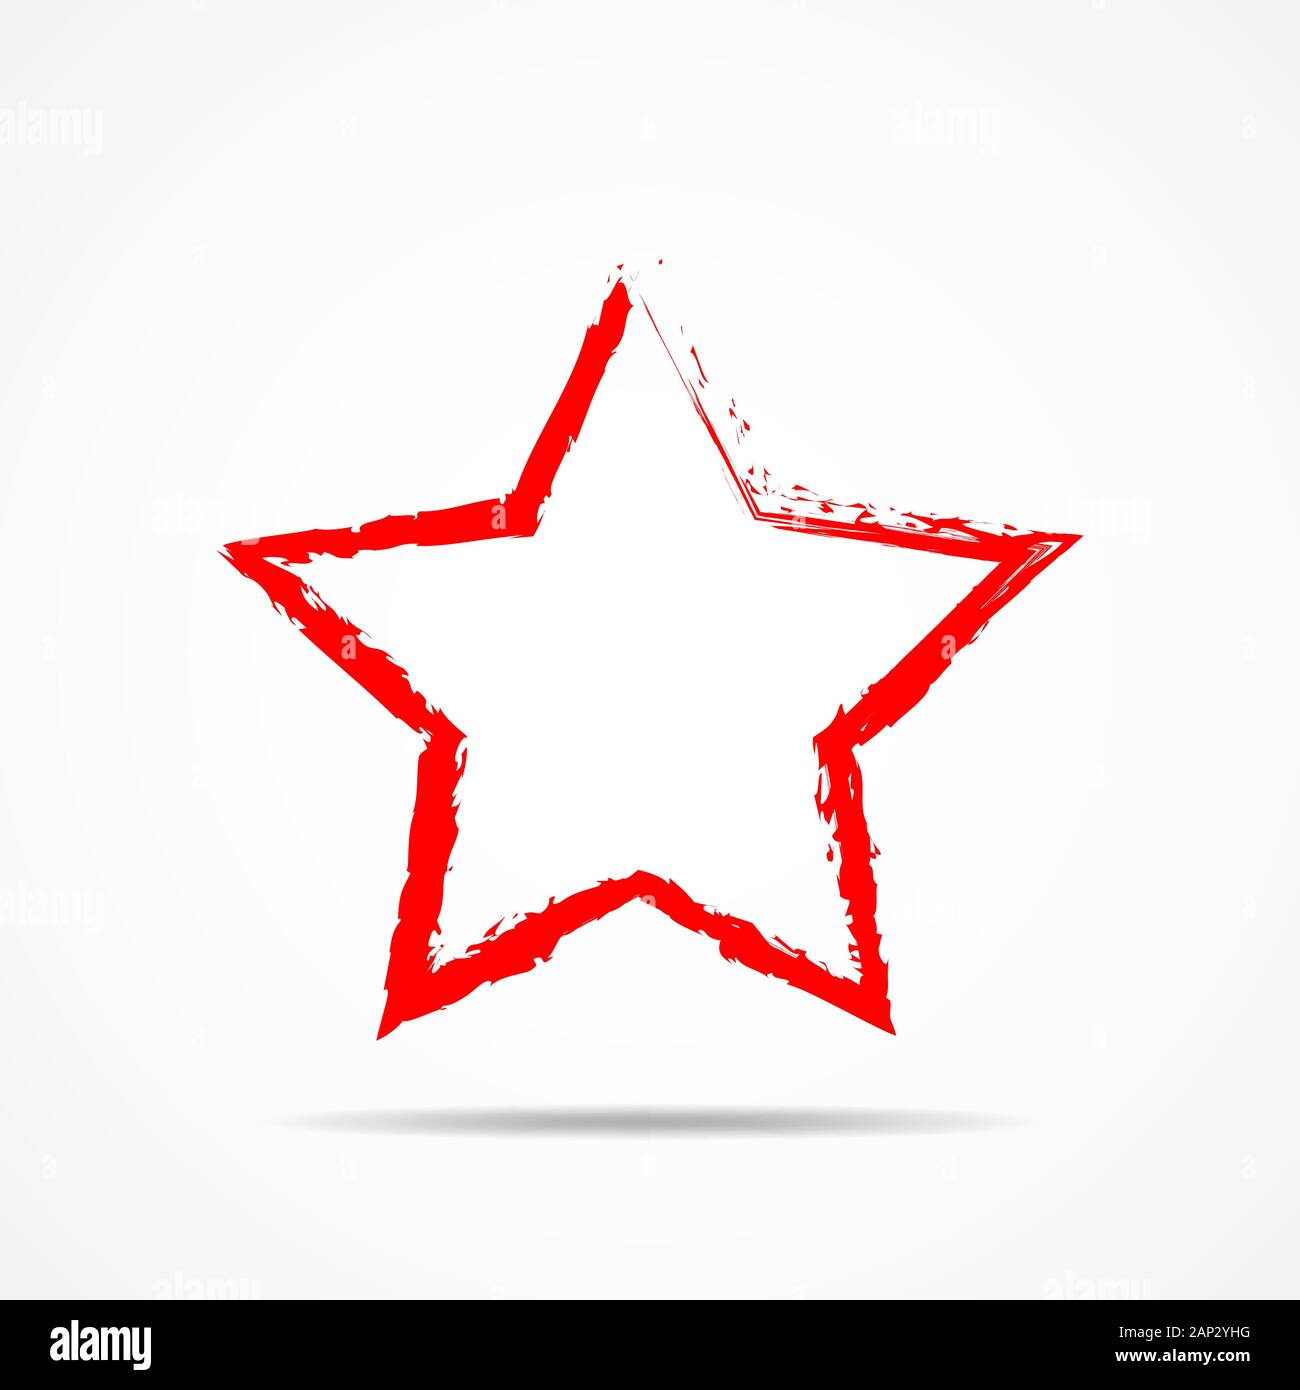 Résumé d'étoile située dans un style dessiné à la main. Abstract red star, isolé sur fond blanc. Vector illustration. Illustration de Vecteur